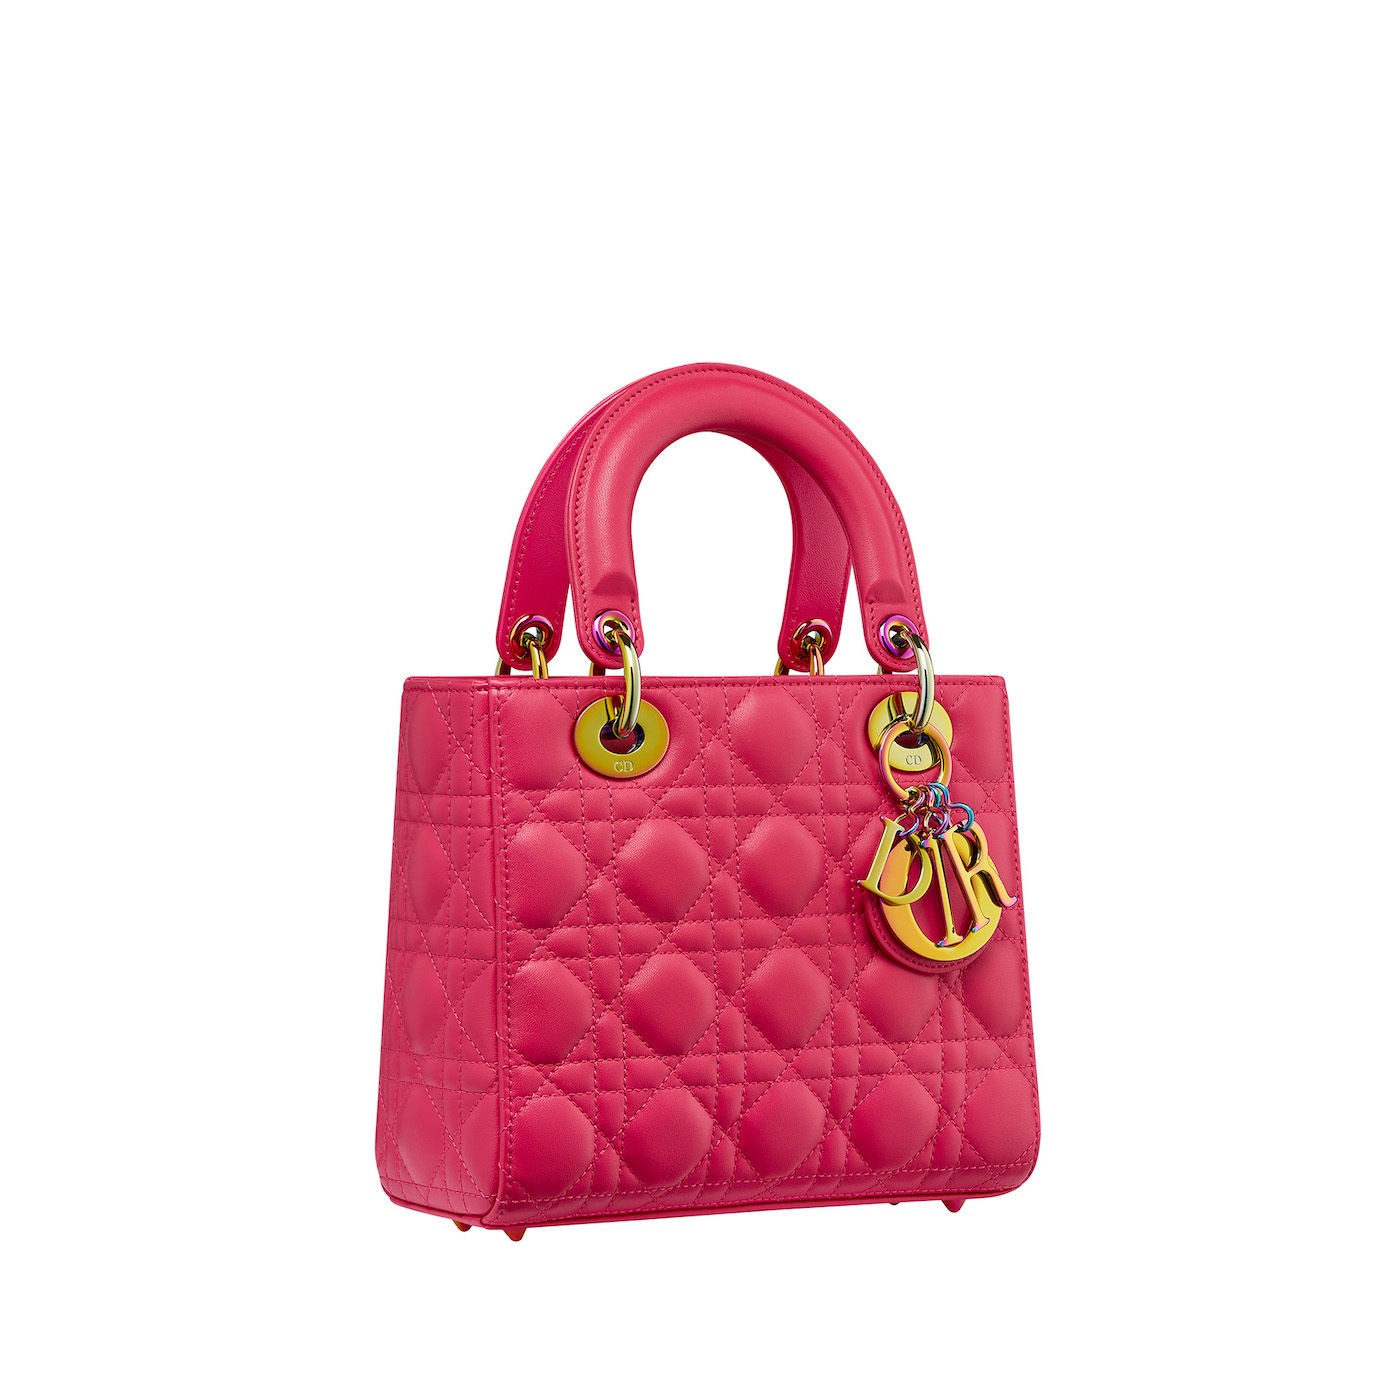 Dior Lady Dior handbag in bright pink